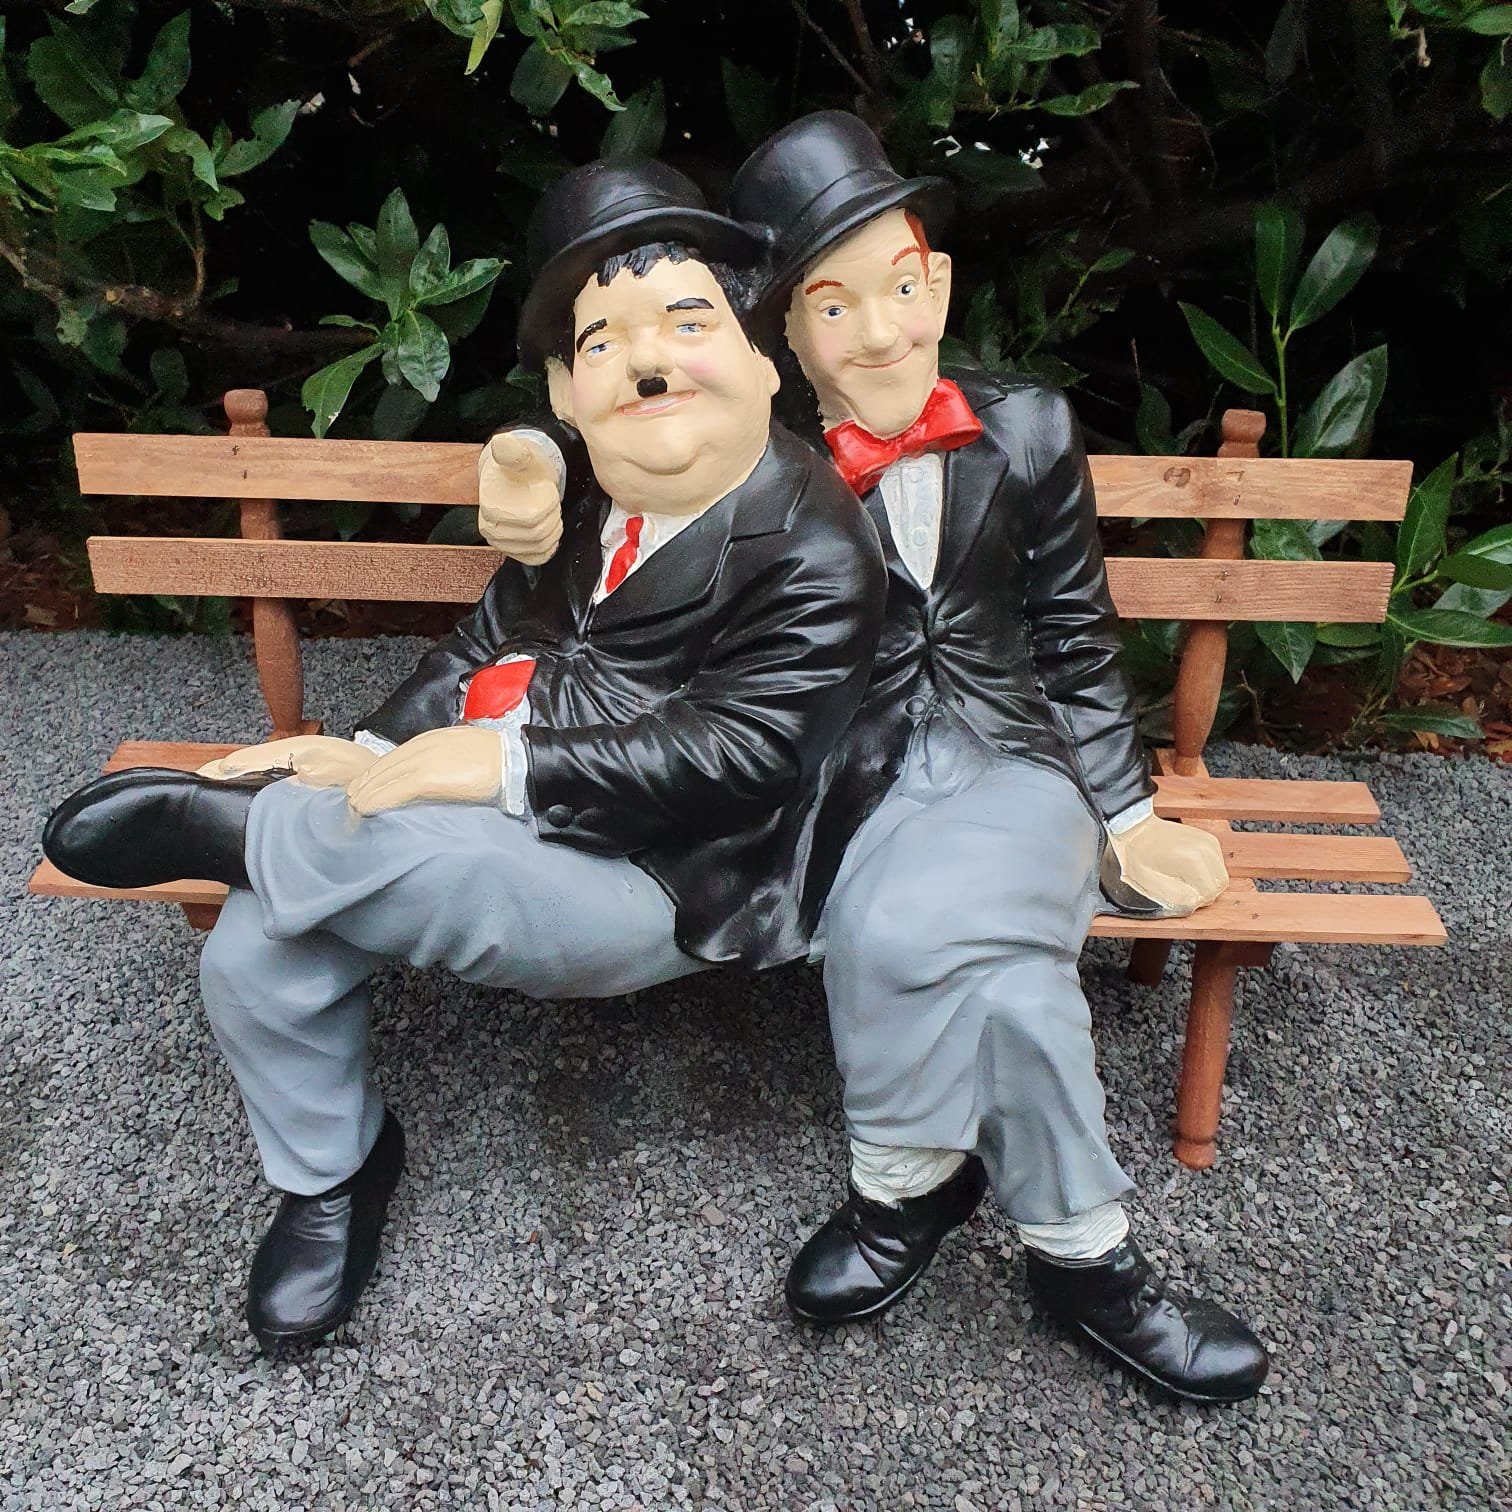 Aspinaworld Gartenfigur Stan Laurel und cm 55 Oliver Doof Bank Figur wetterfest Hardy auf und Dick